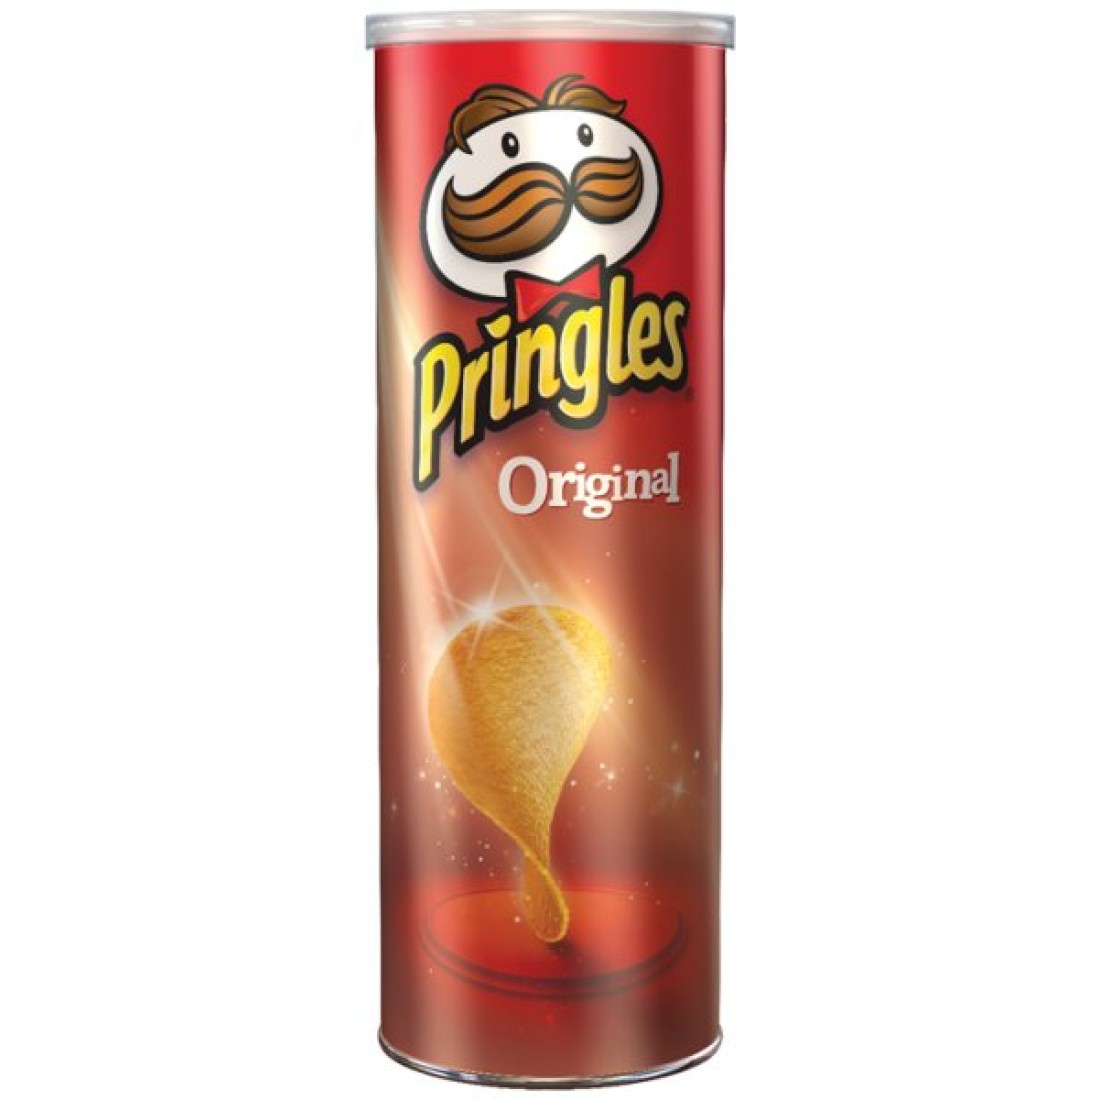 Pringles Original 200g | Crisps & Snacks, SweetCo Wholesale